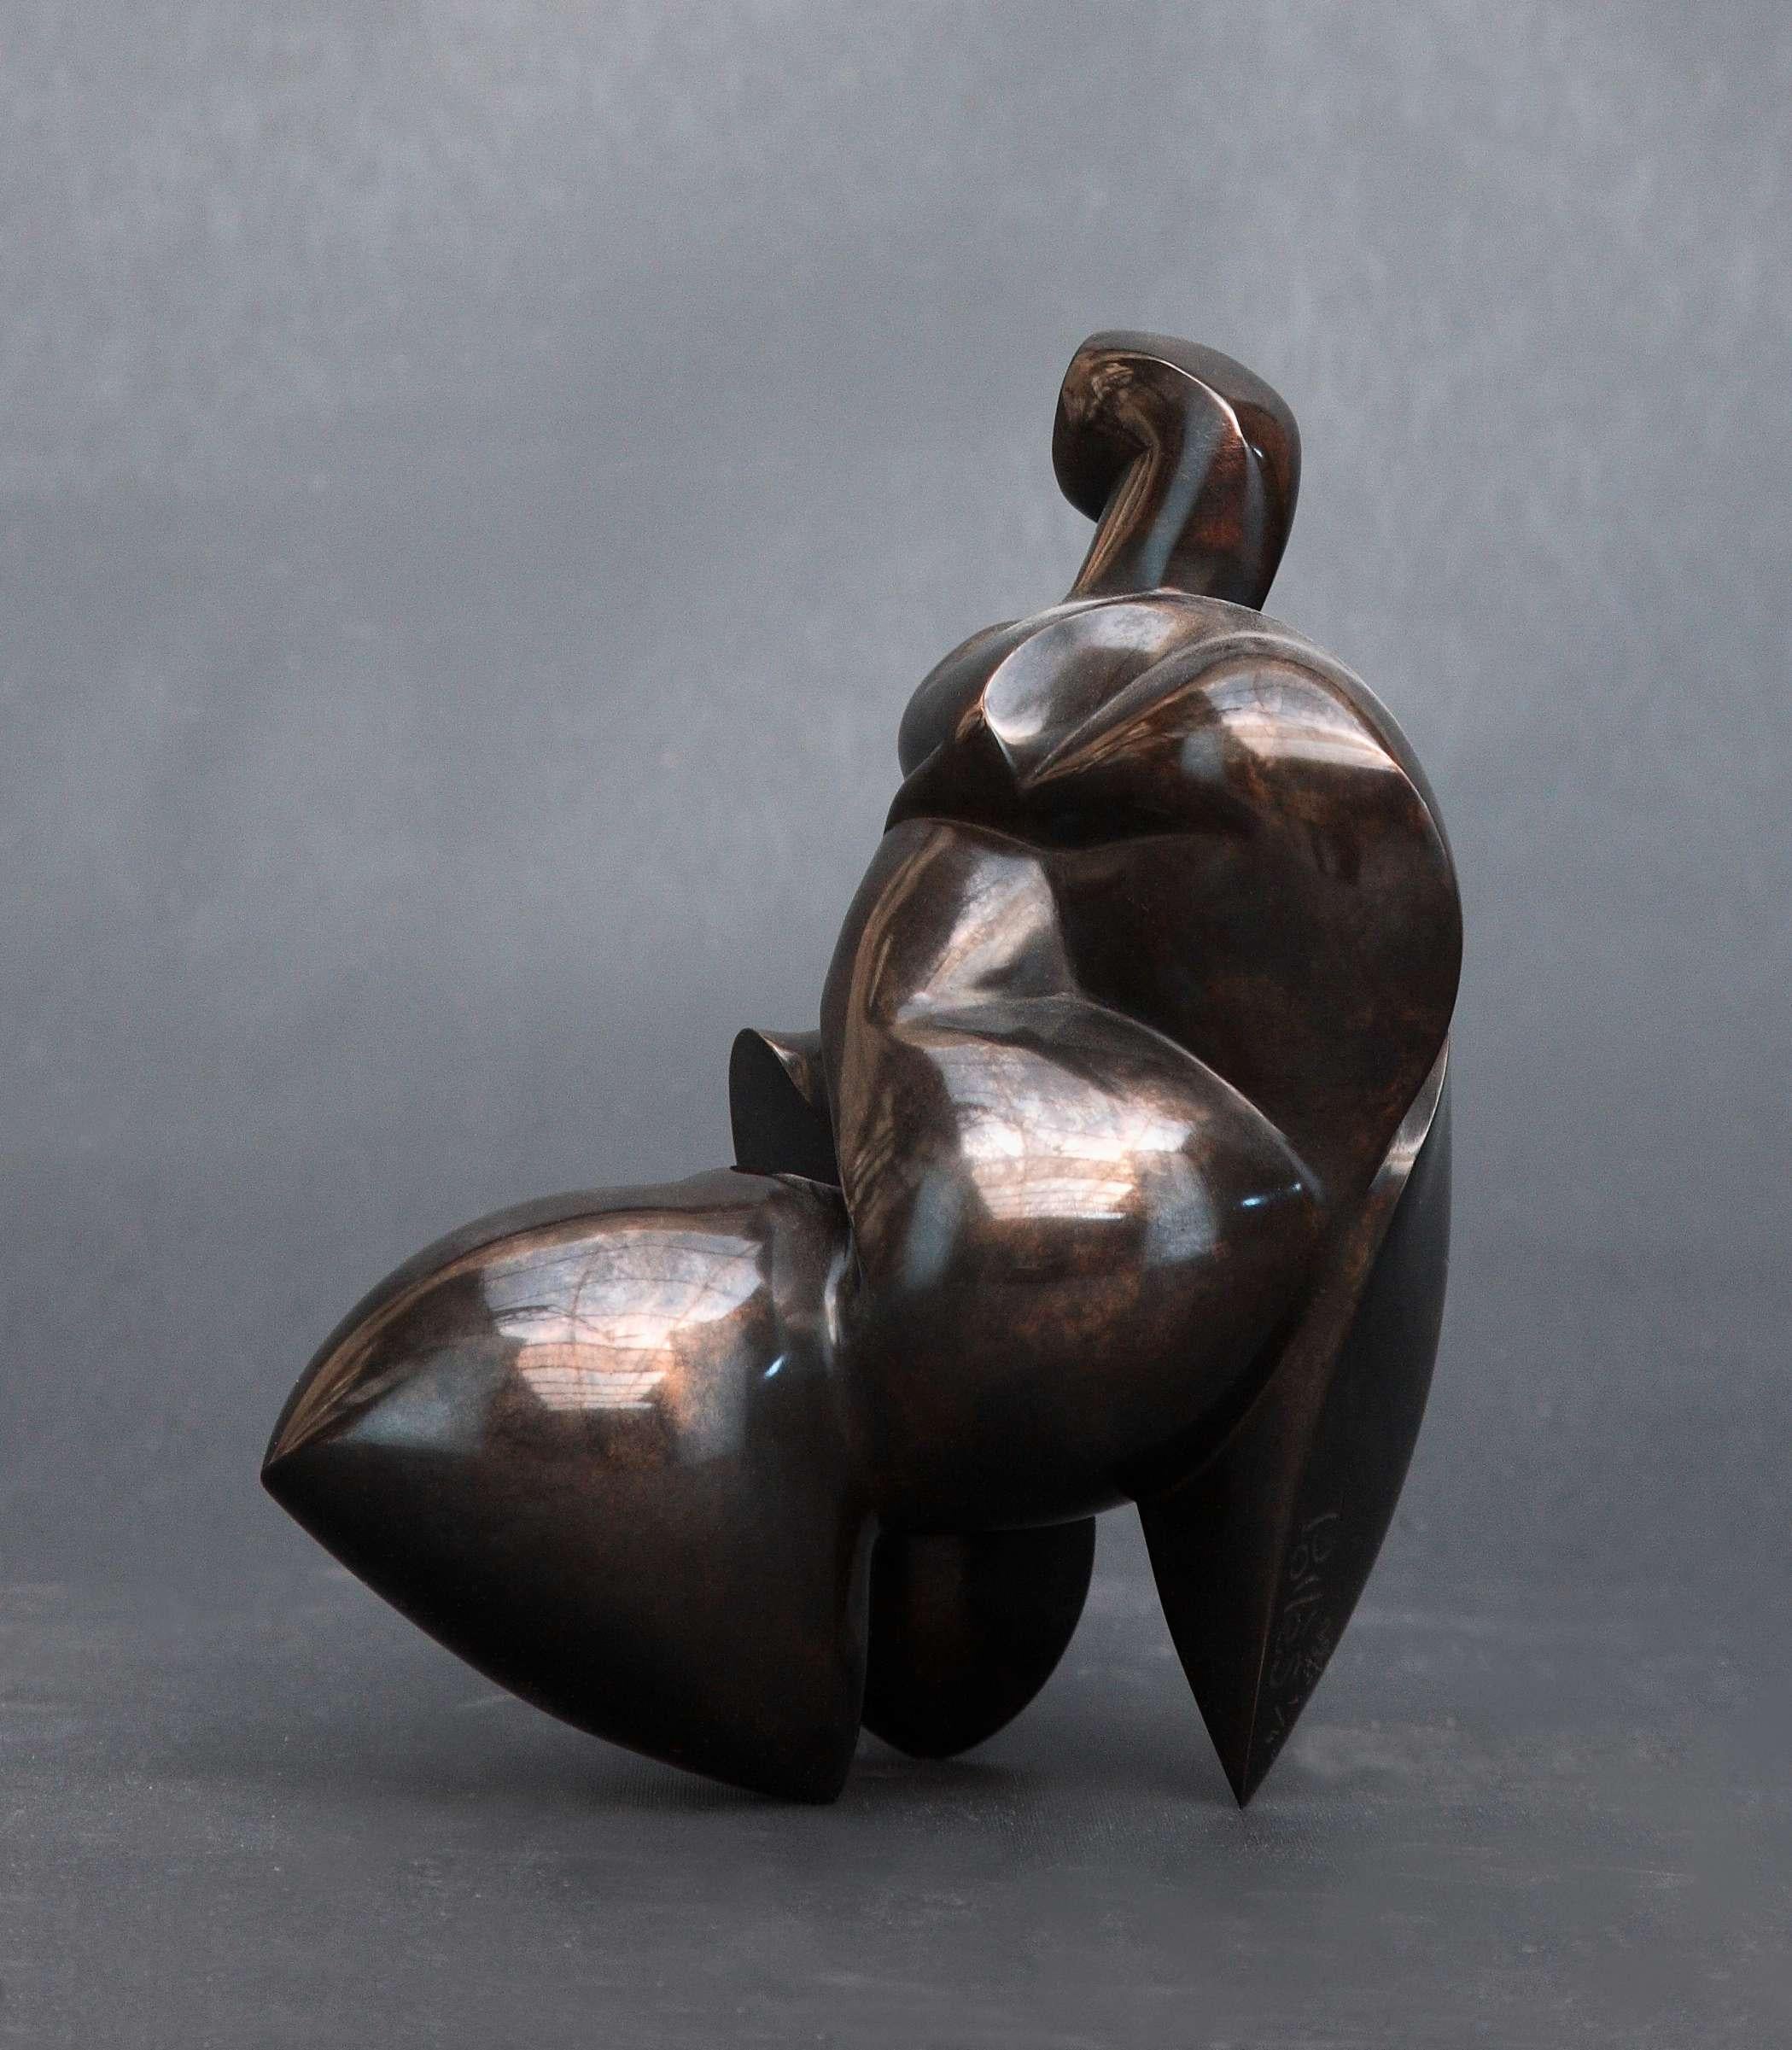 Pollès - Sculpture en bronze - Oxynamide
Bronze
Edition : 1/4
2011
21 x 13 x 17 cm
Signé et numéroté

BIOGRAPHIE
Pollès est né à Paris en 1945
Comme Léonard de Vinci à la recherche de la perfection anatomique, de la représentation du mouvement, avec